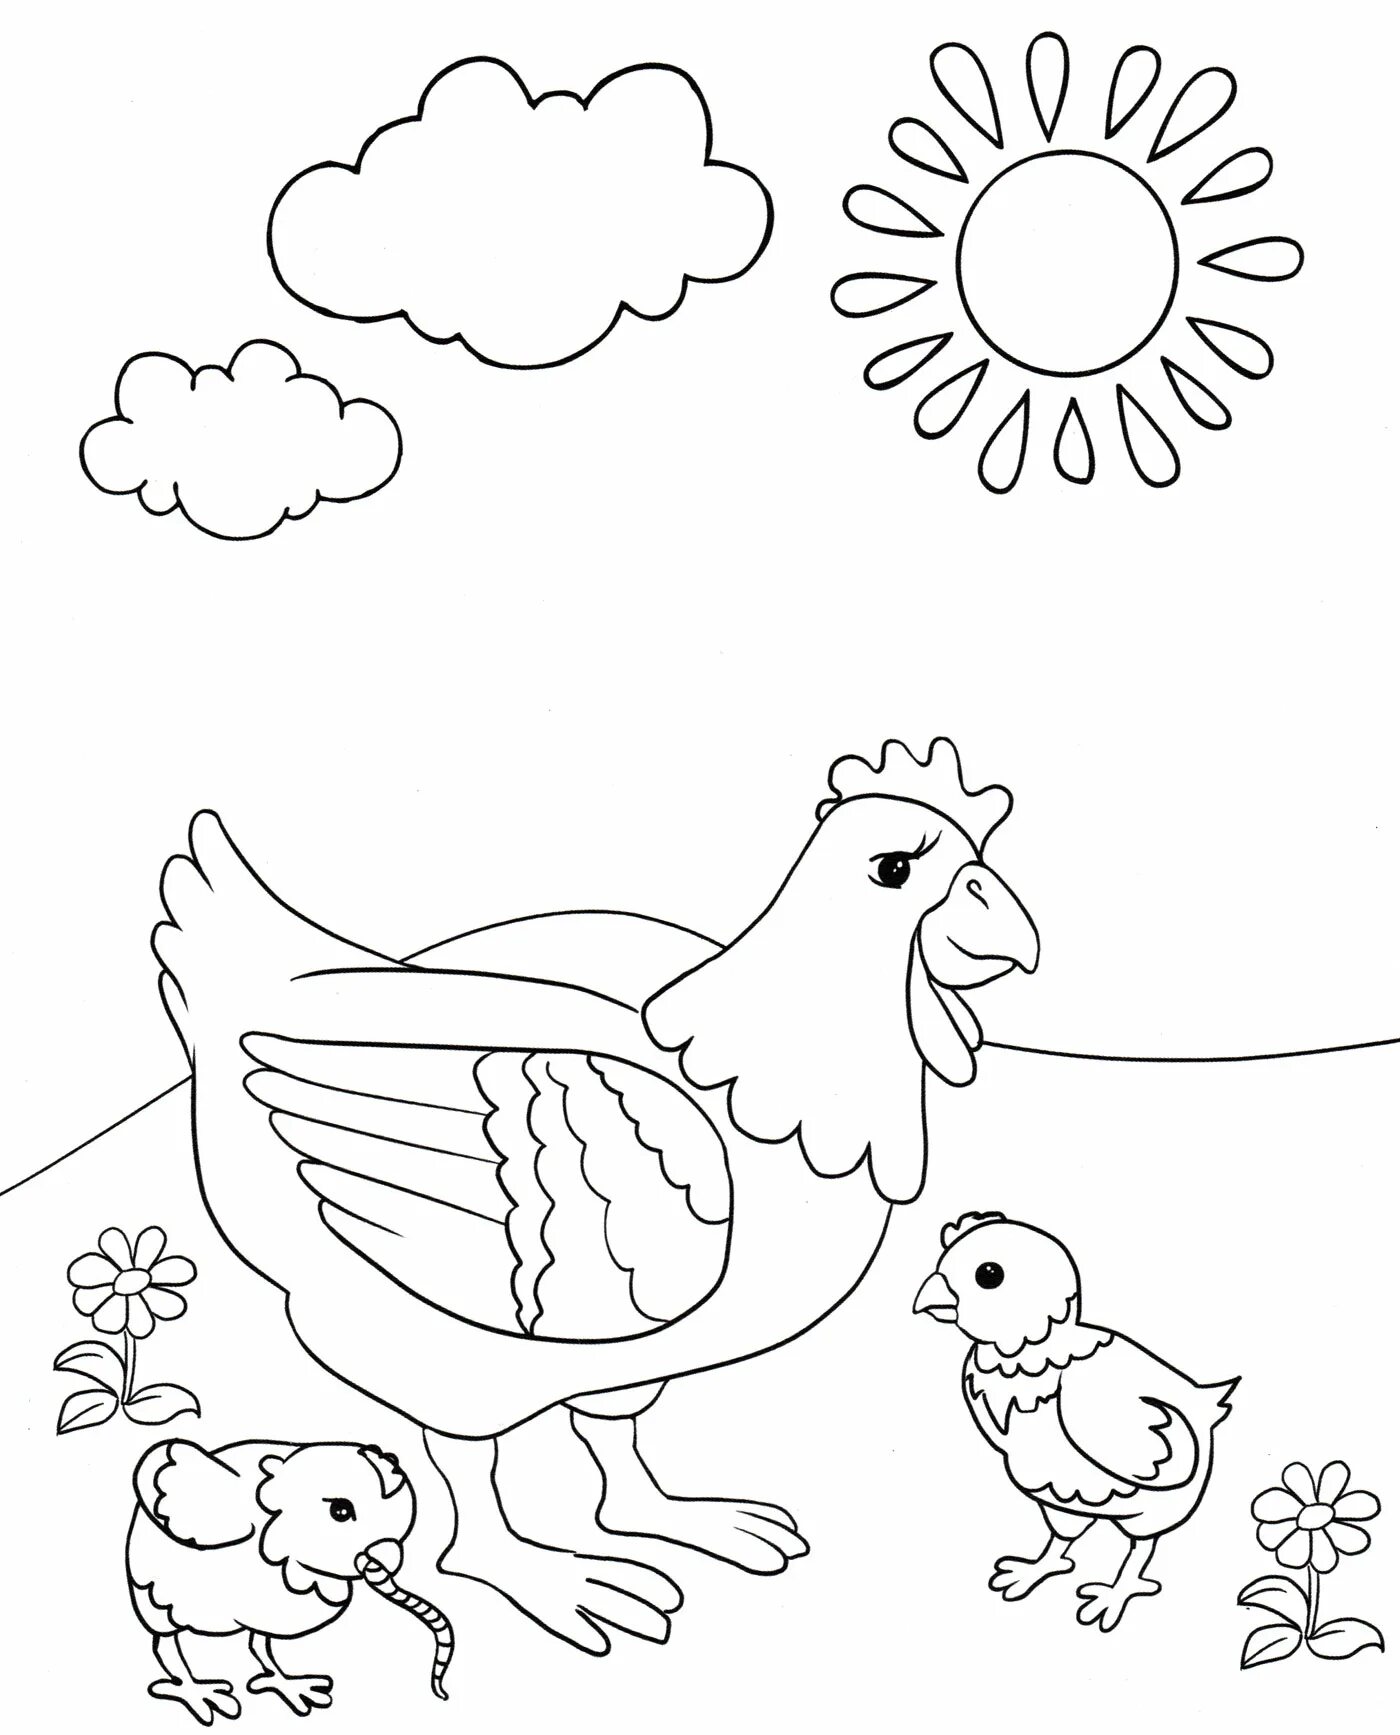 Раскраска 3 цыпленка. Курица раскраска. Курочка раскраска. Раскраска курица с цыплятами. Курица с цыплятами раскраска для детей.